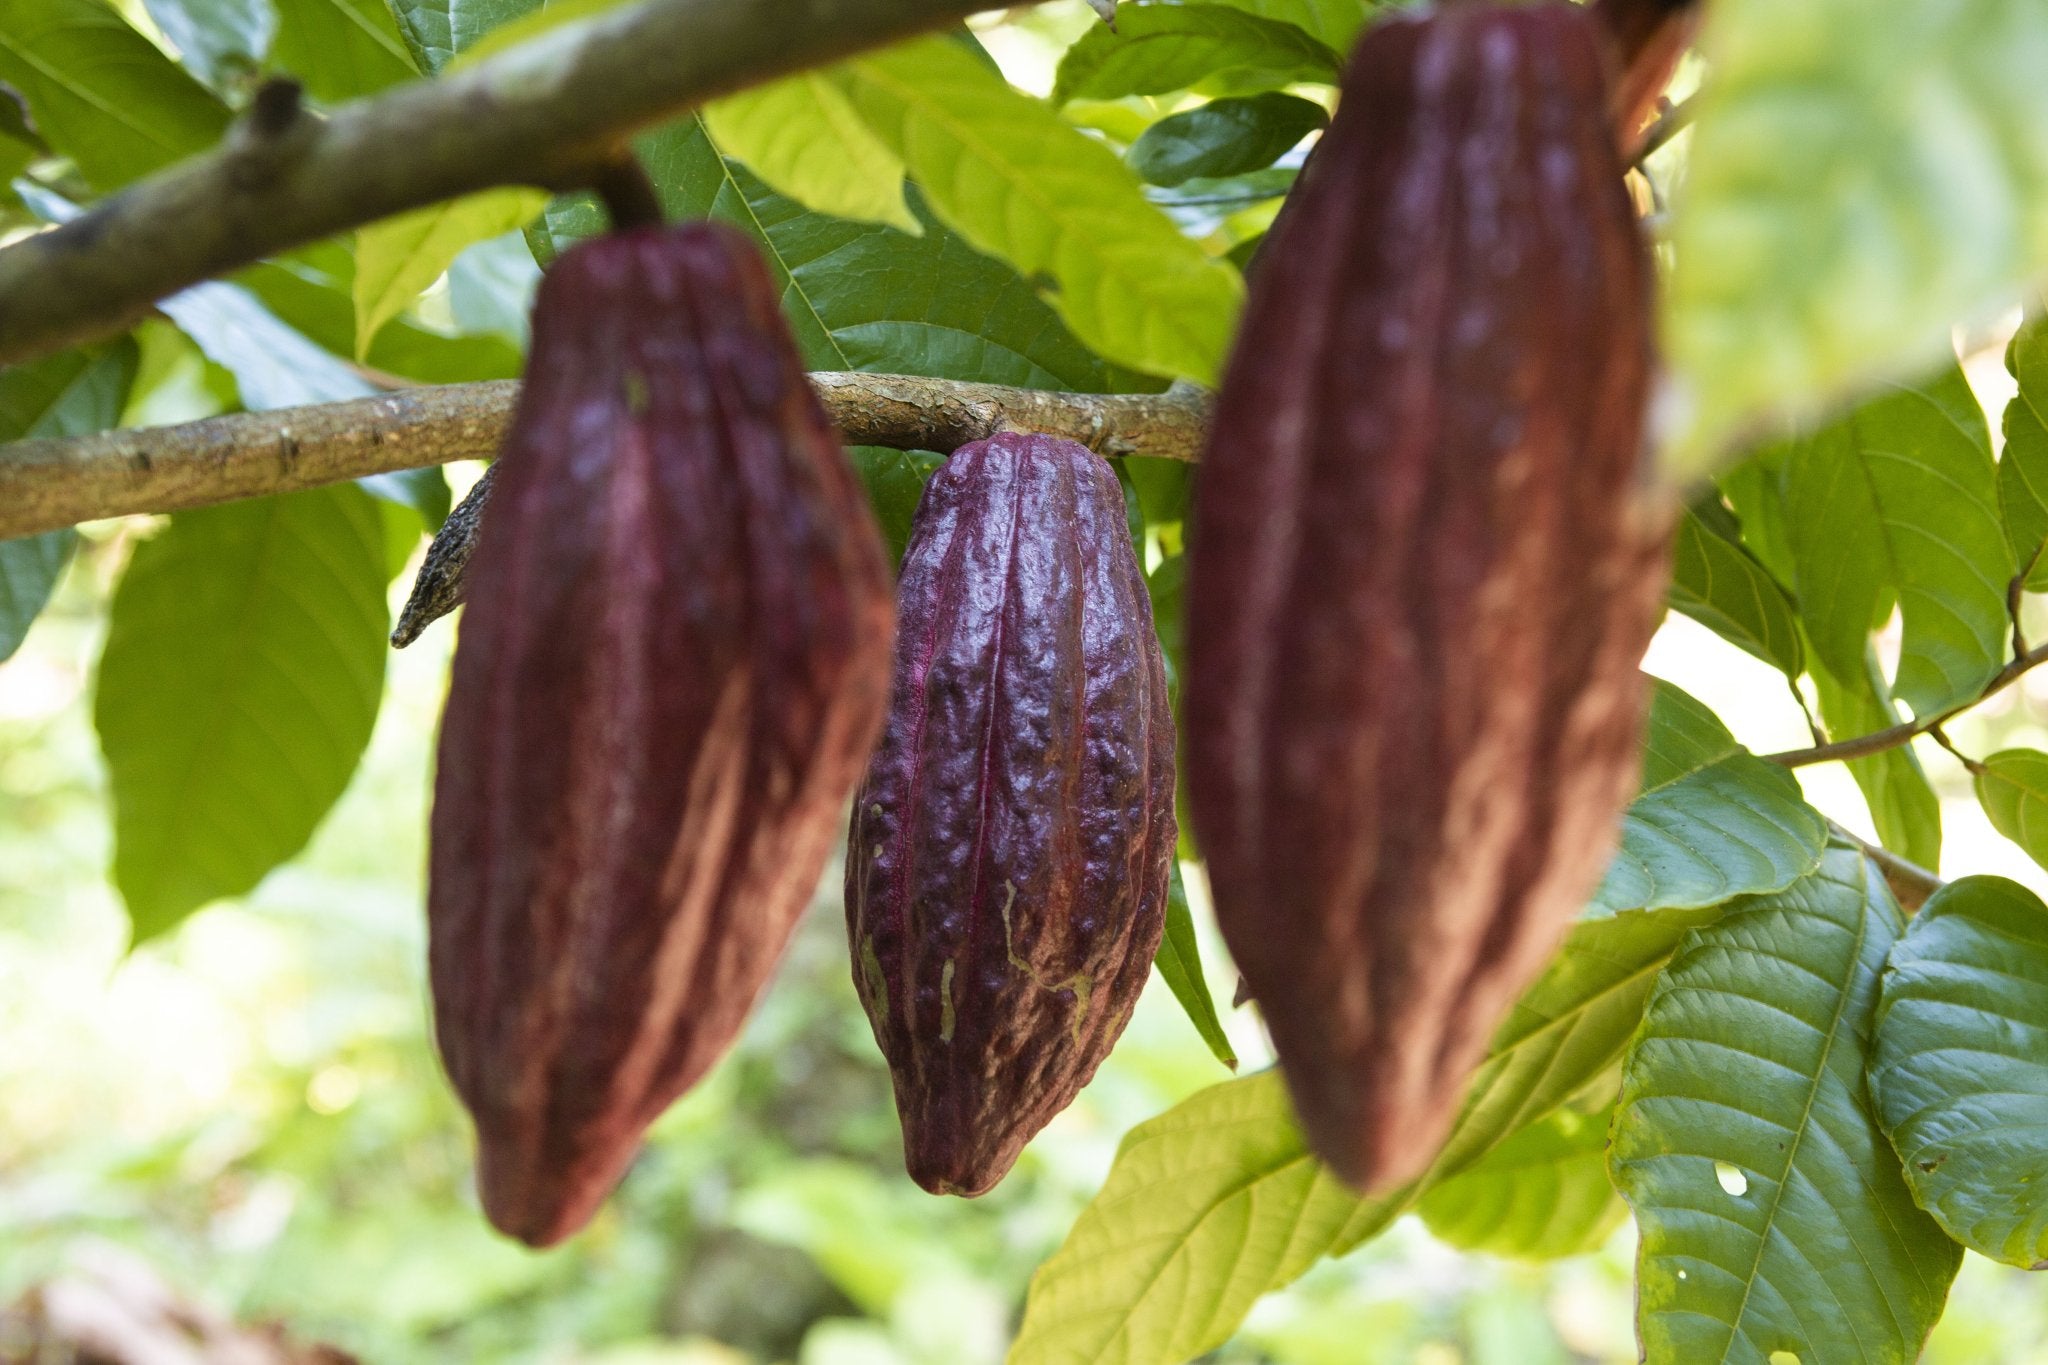 Raw Cacao Beans 16 oz- Criollo